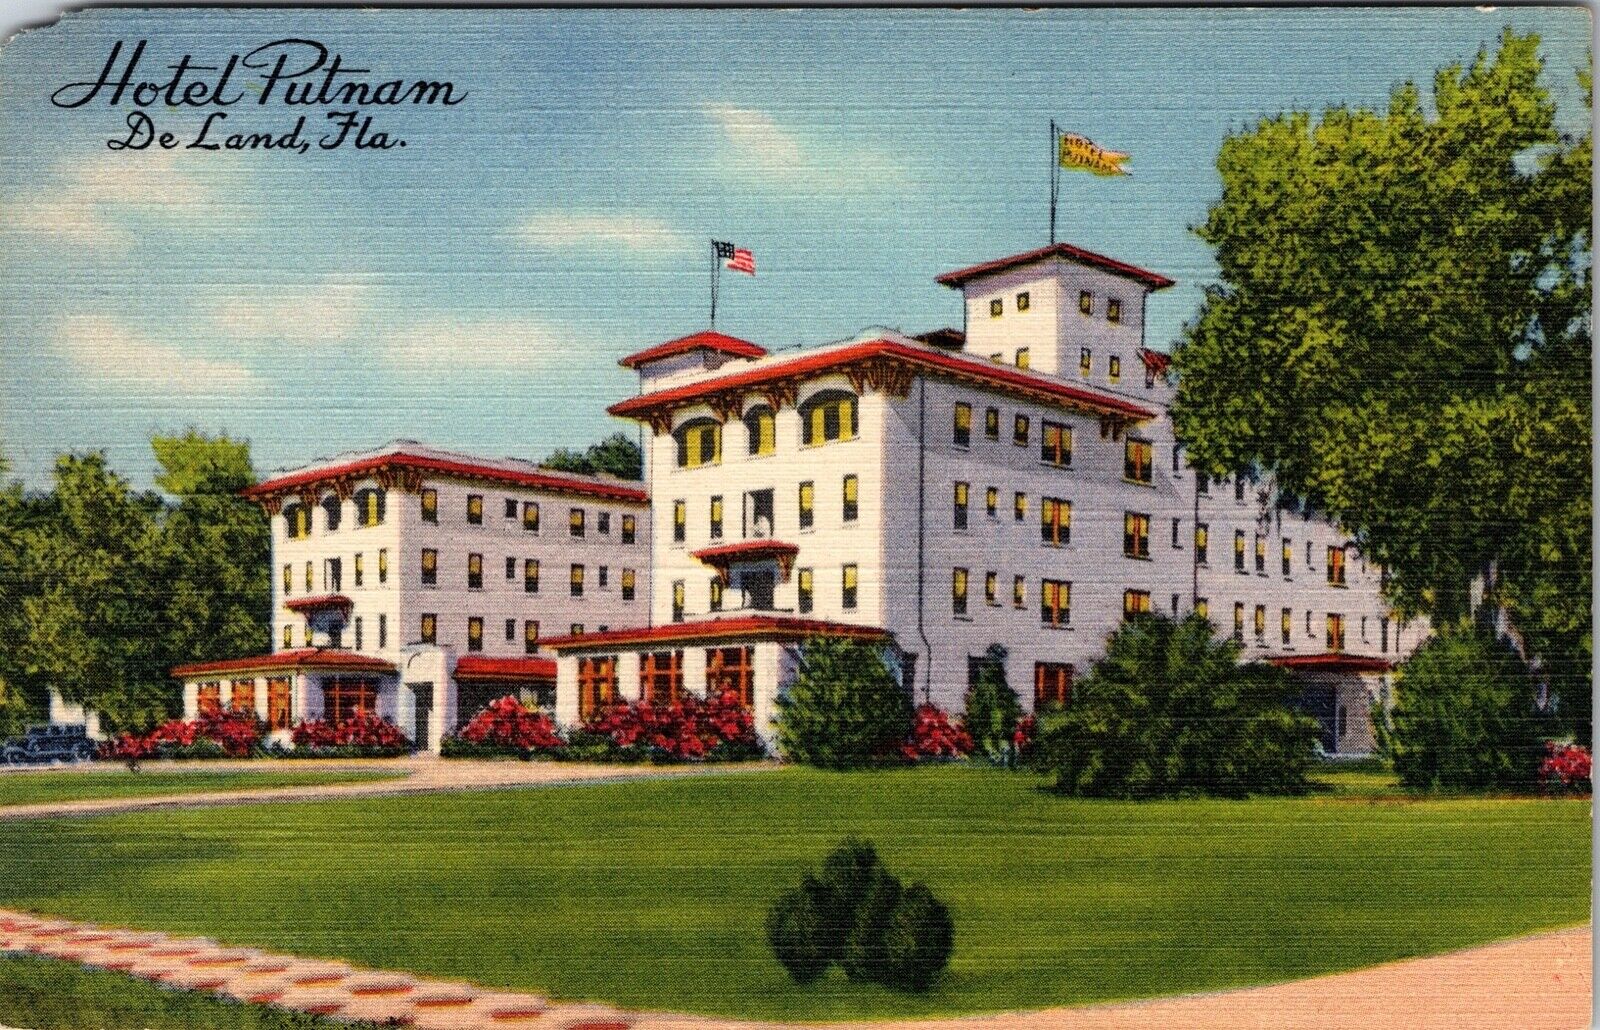 De Land Florida Hotel Putnam Vintage Advertising Postcard 